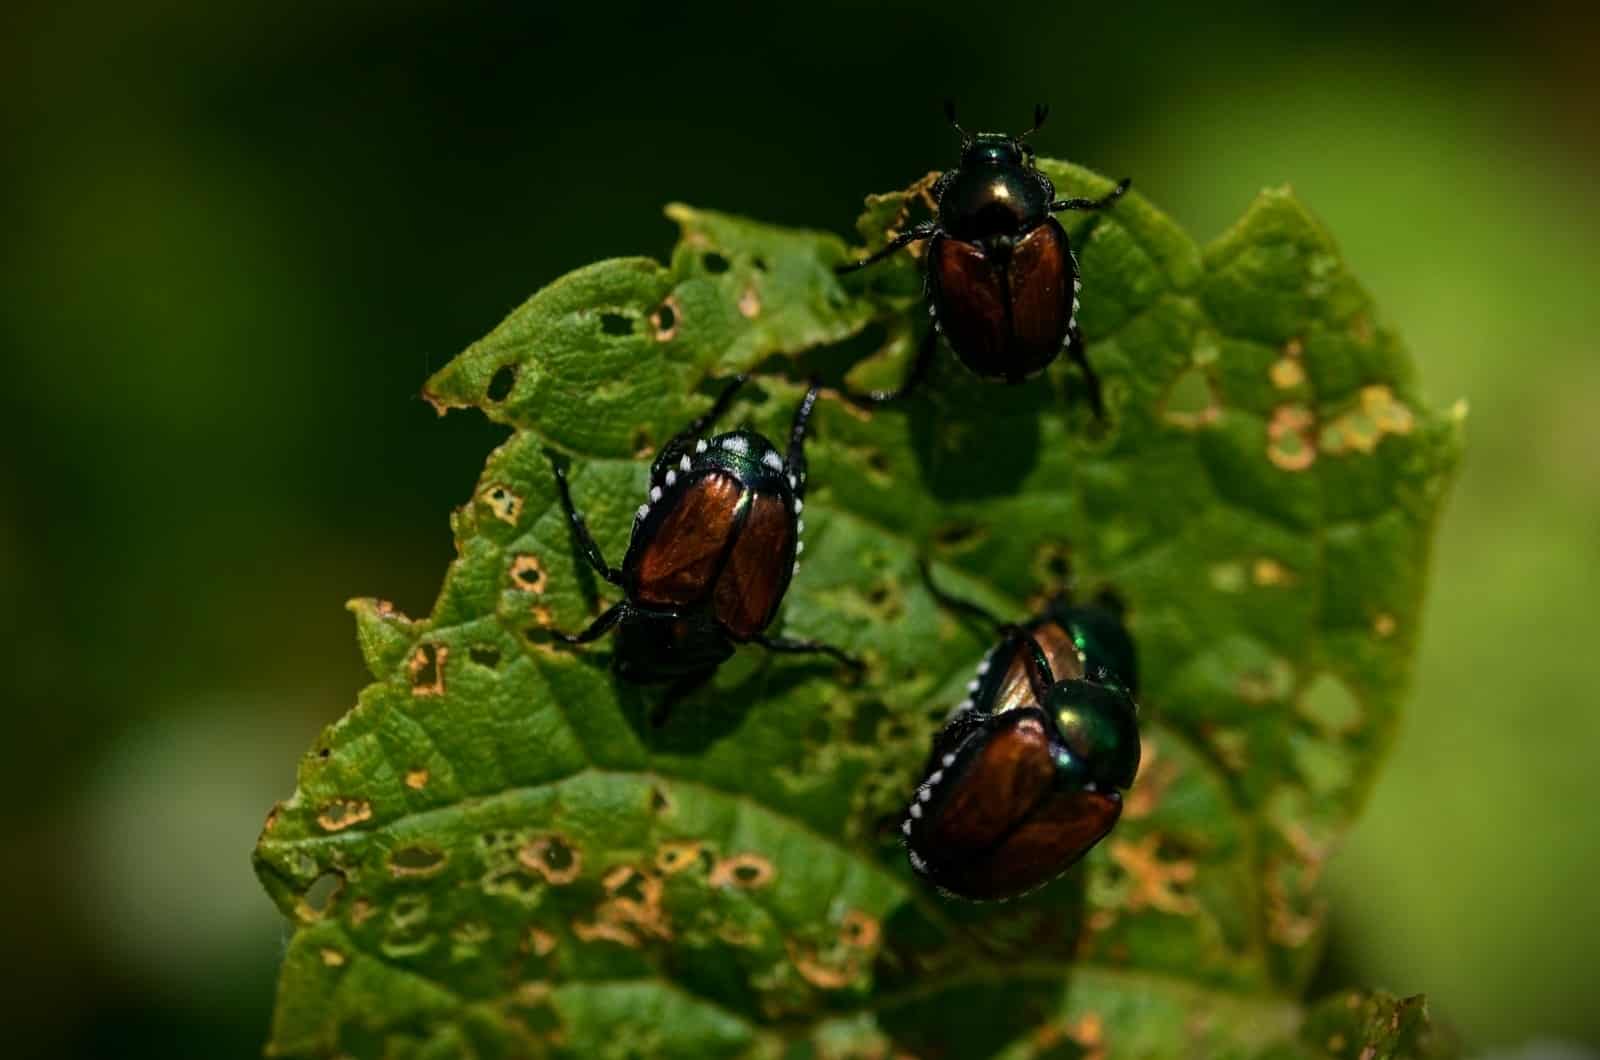 Japanese Beetles on leaf